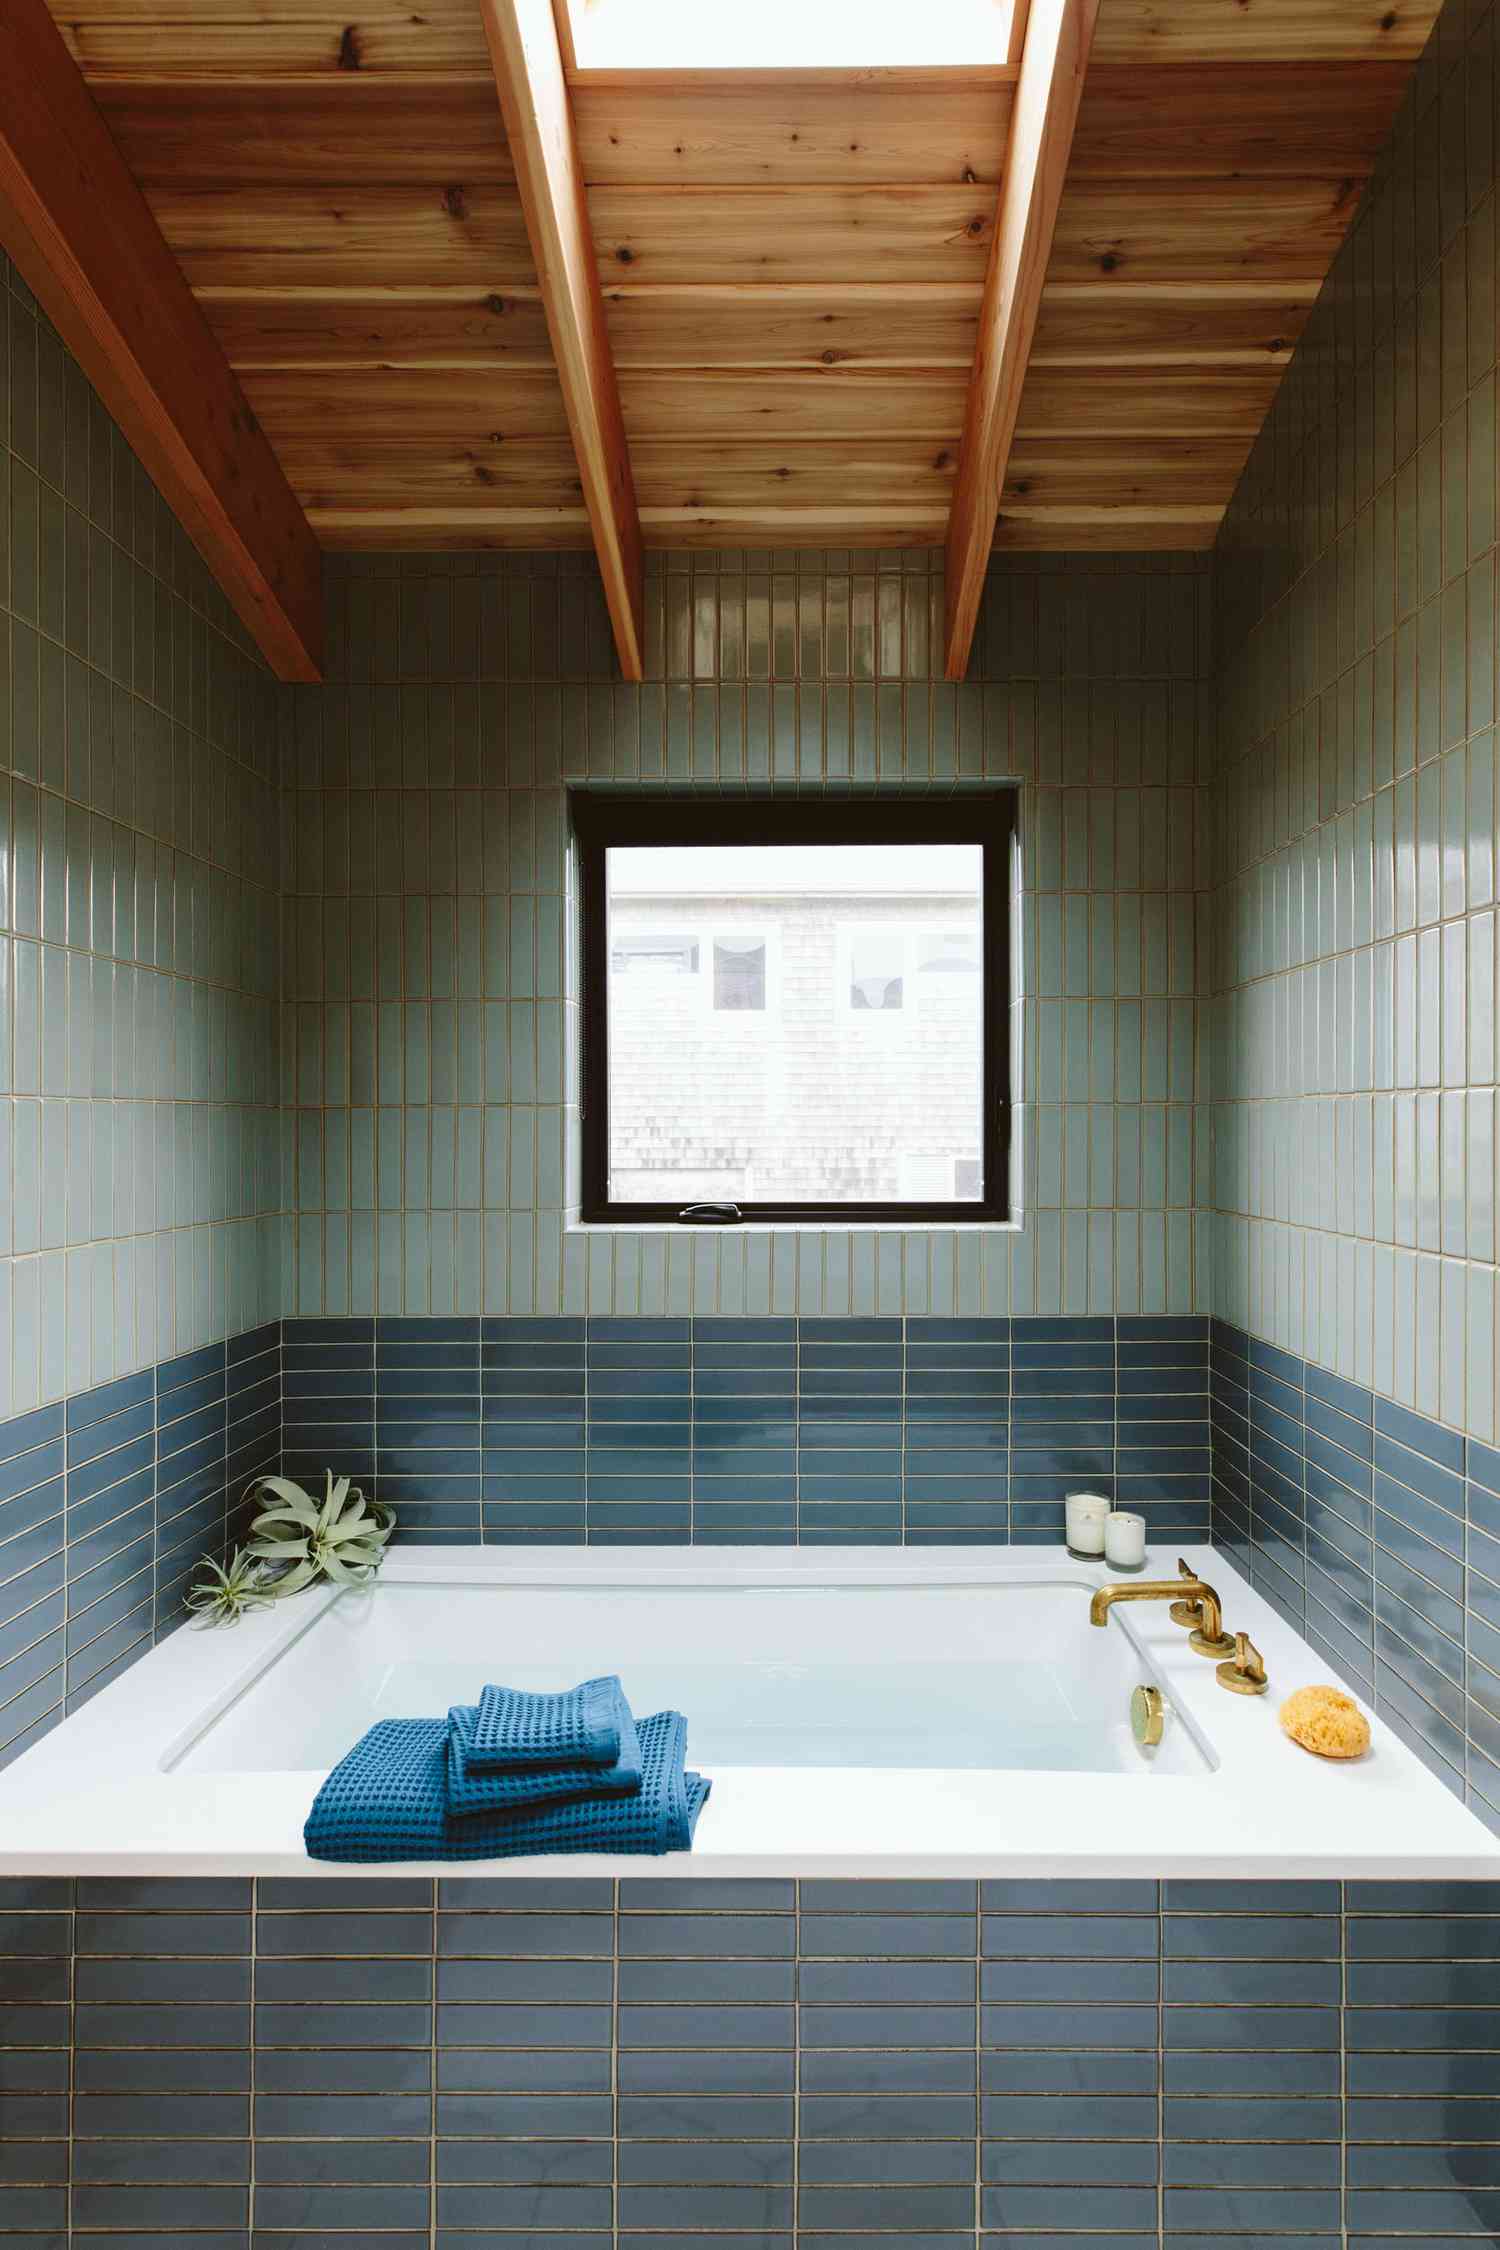 ideias de azulejos para nichos de banheira